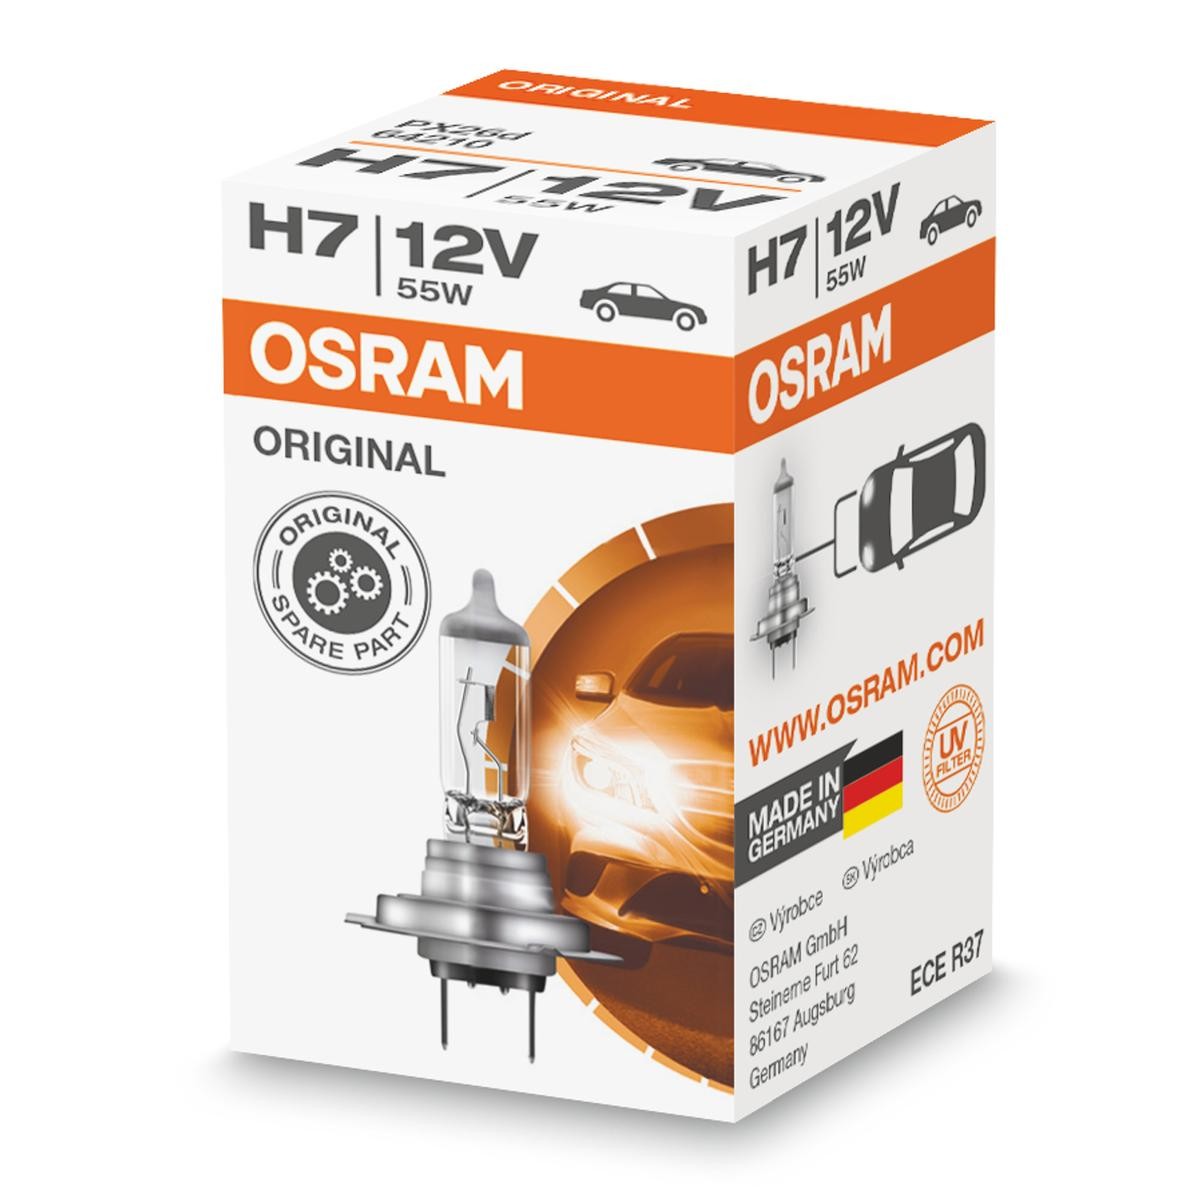 Toyota Ersatzteile in Original Qualität 
H7 OSRAM 64210L